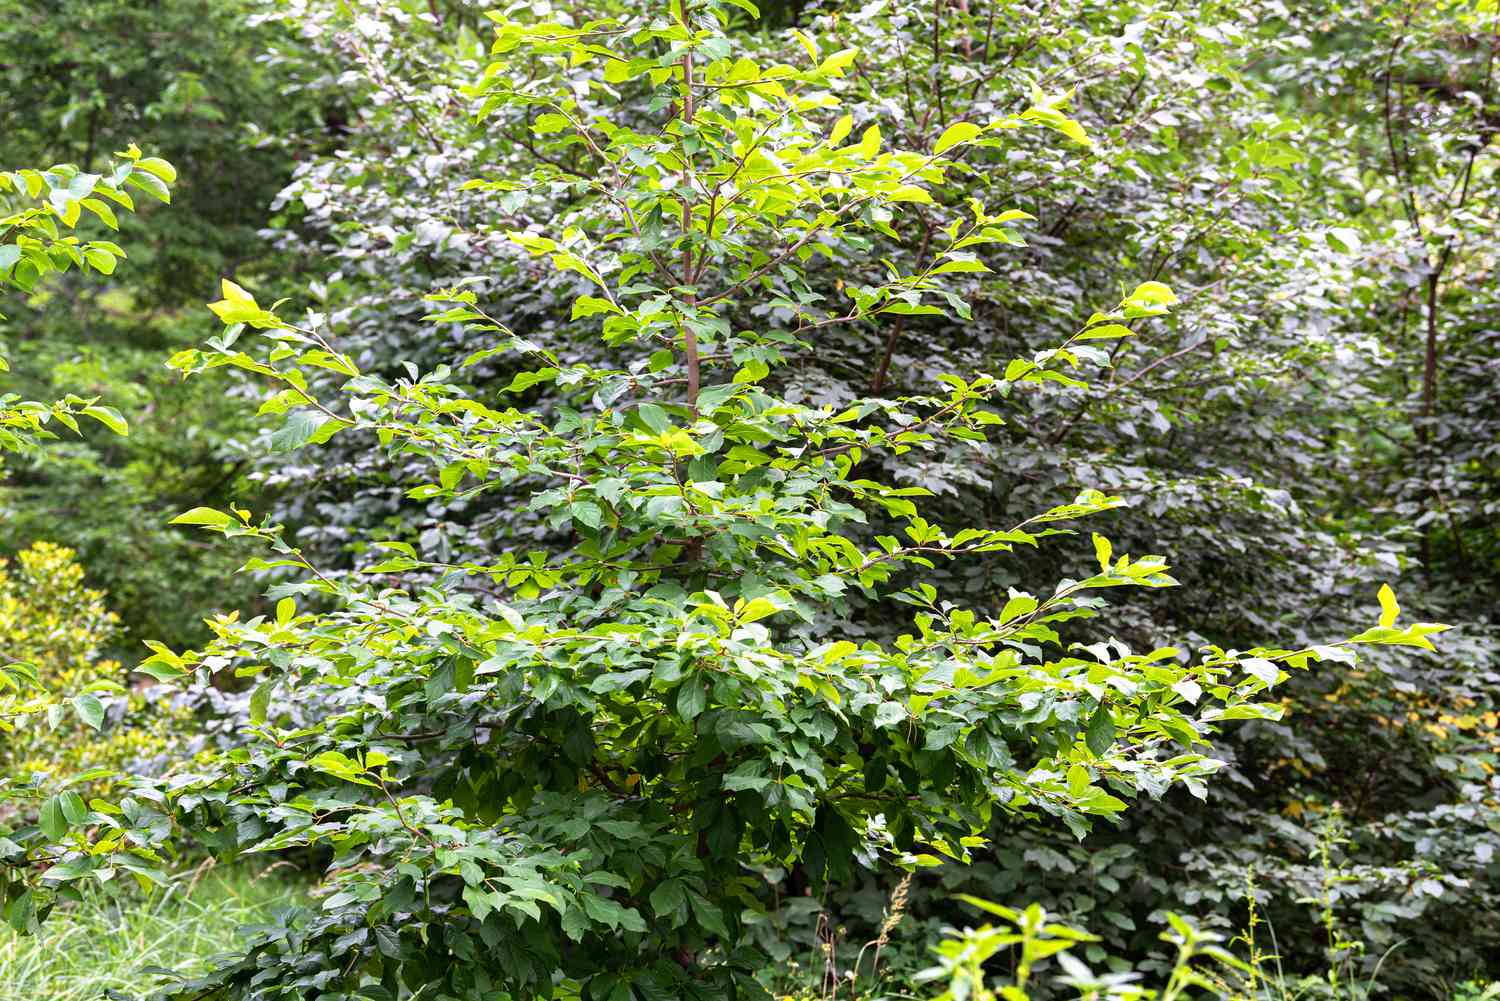 Árvore de goma preta com folhas verdes brilhantes no meio de uma área arborizada